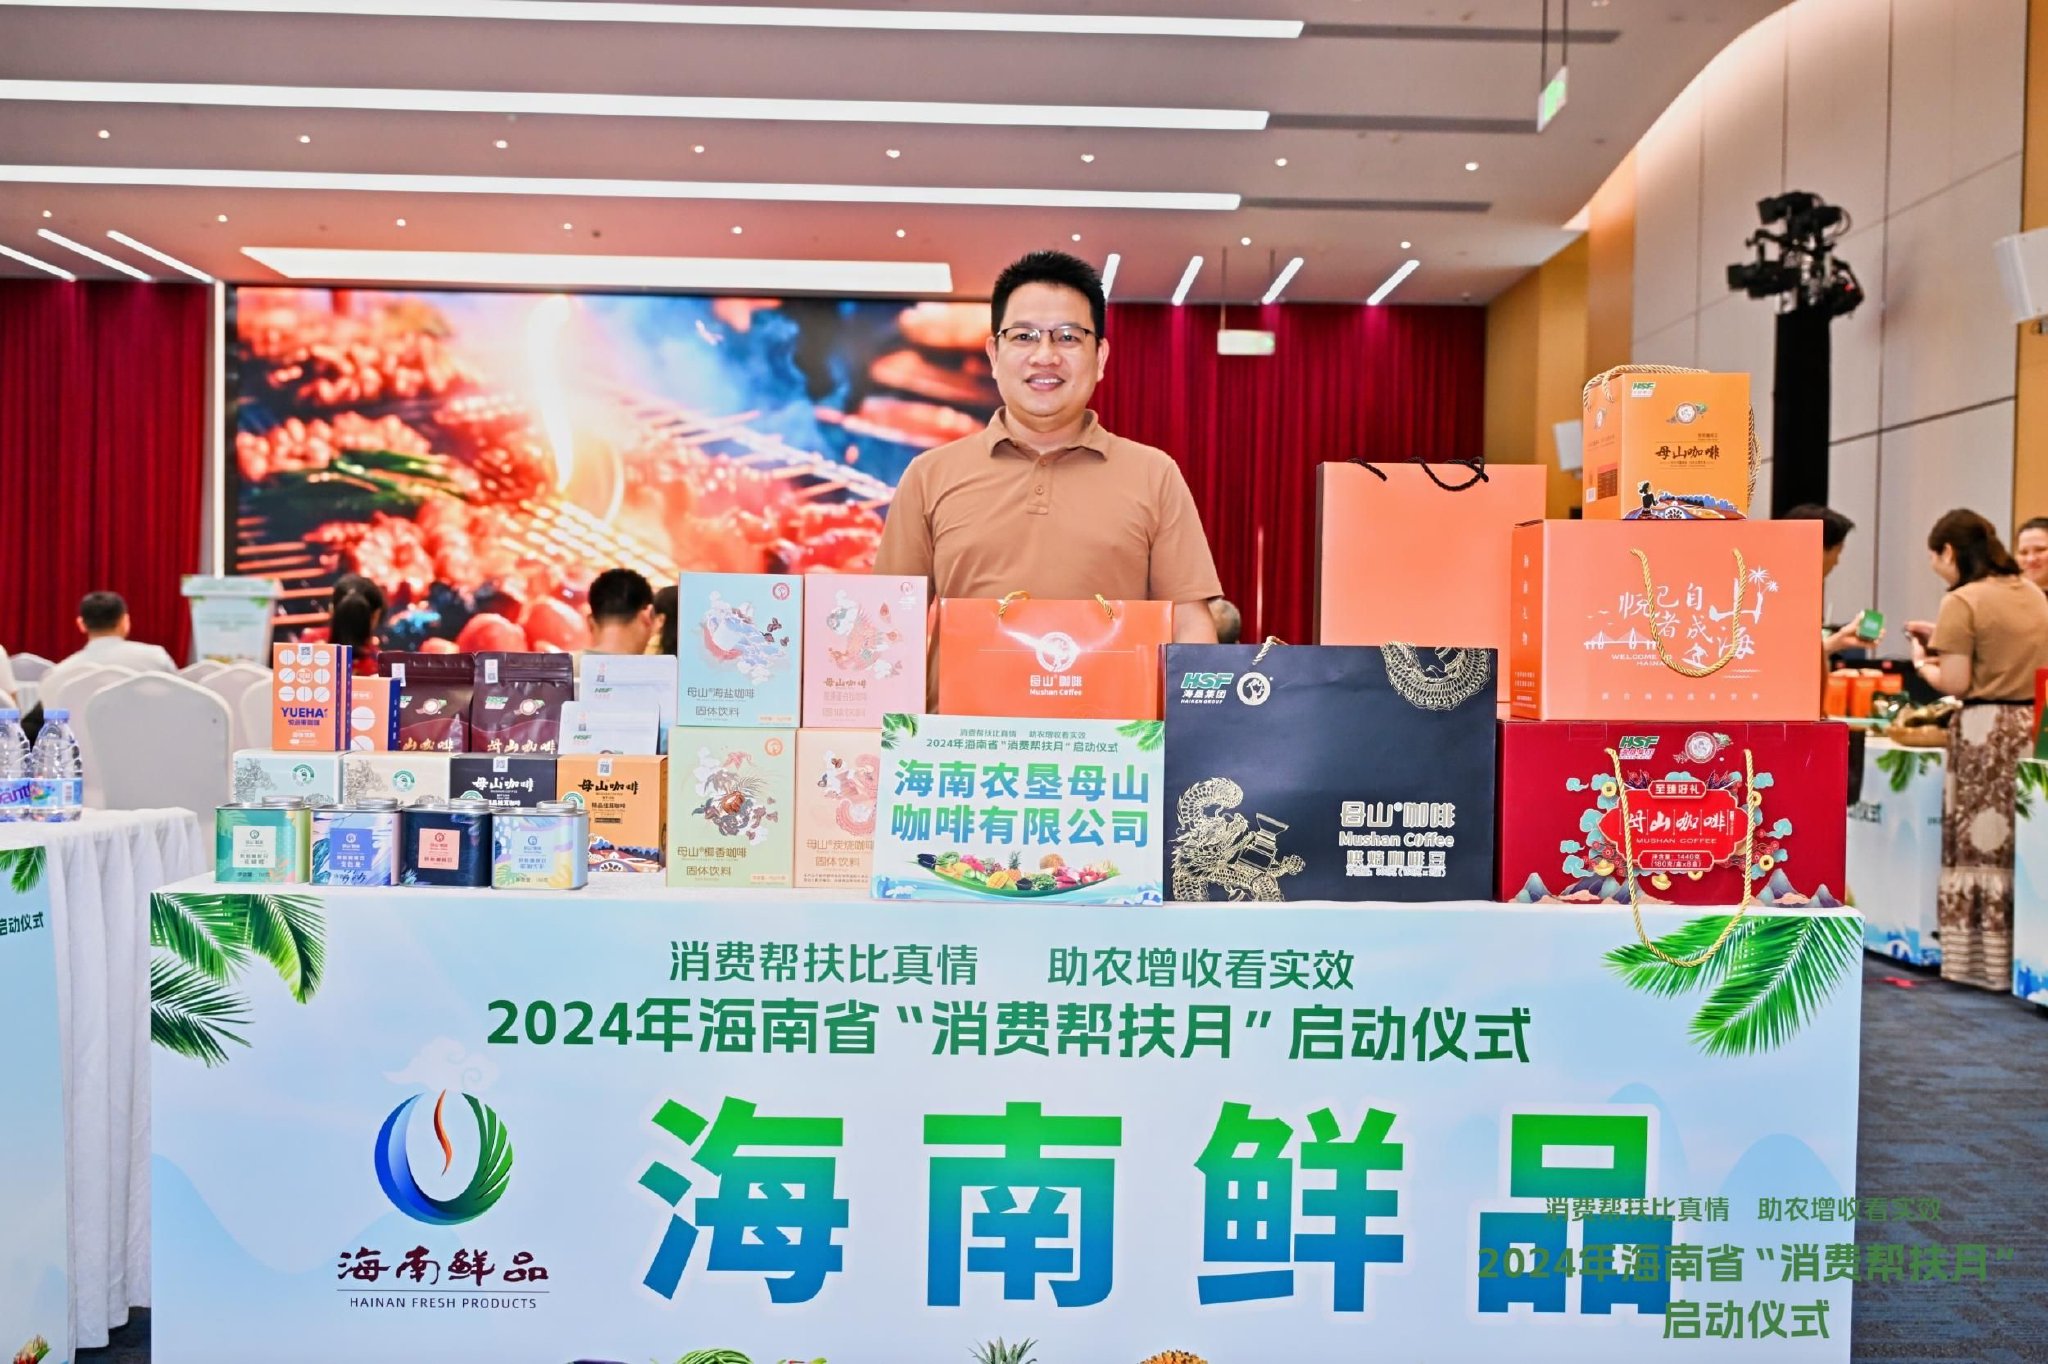 海南省农业农村厅党组成员符立东在开场致辞中提到,今年海南消费帮扶